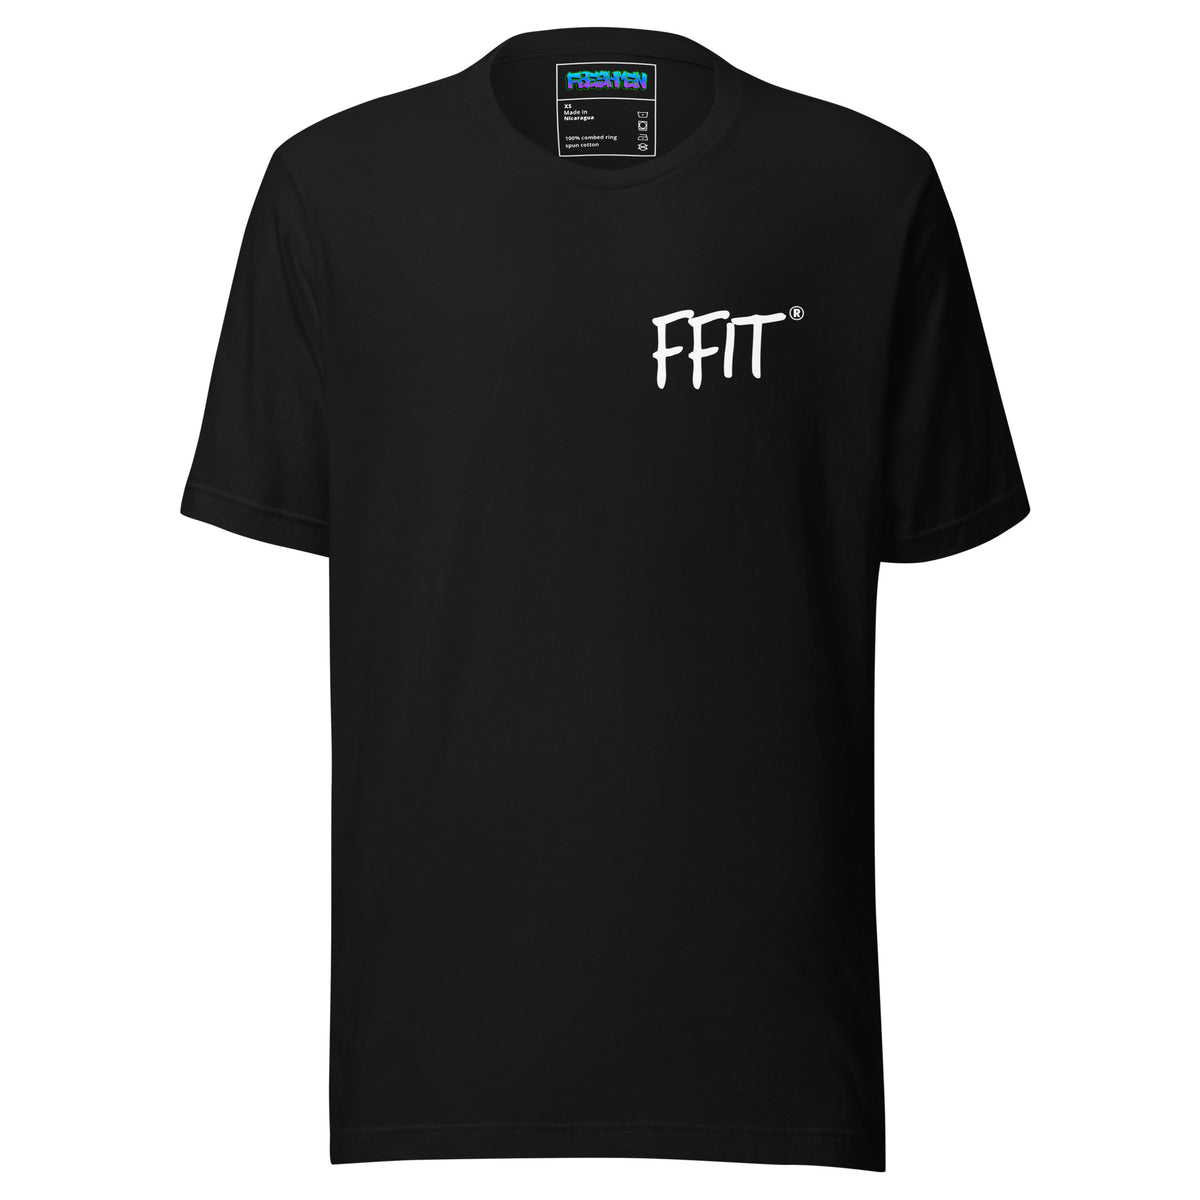 Freshmen FFIT Statement Unisex T-Shirt Black